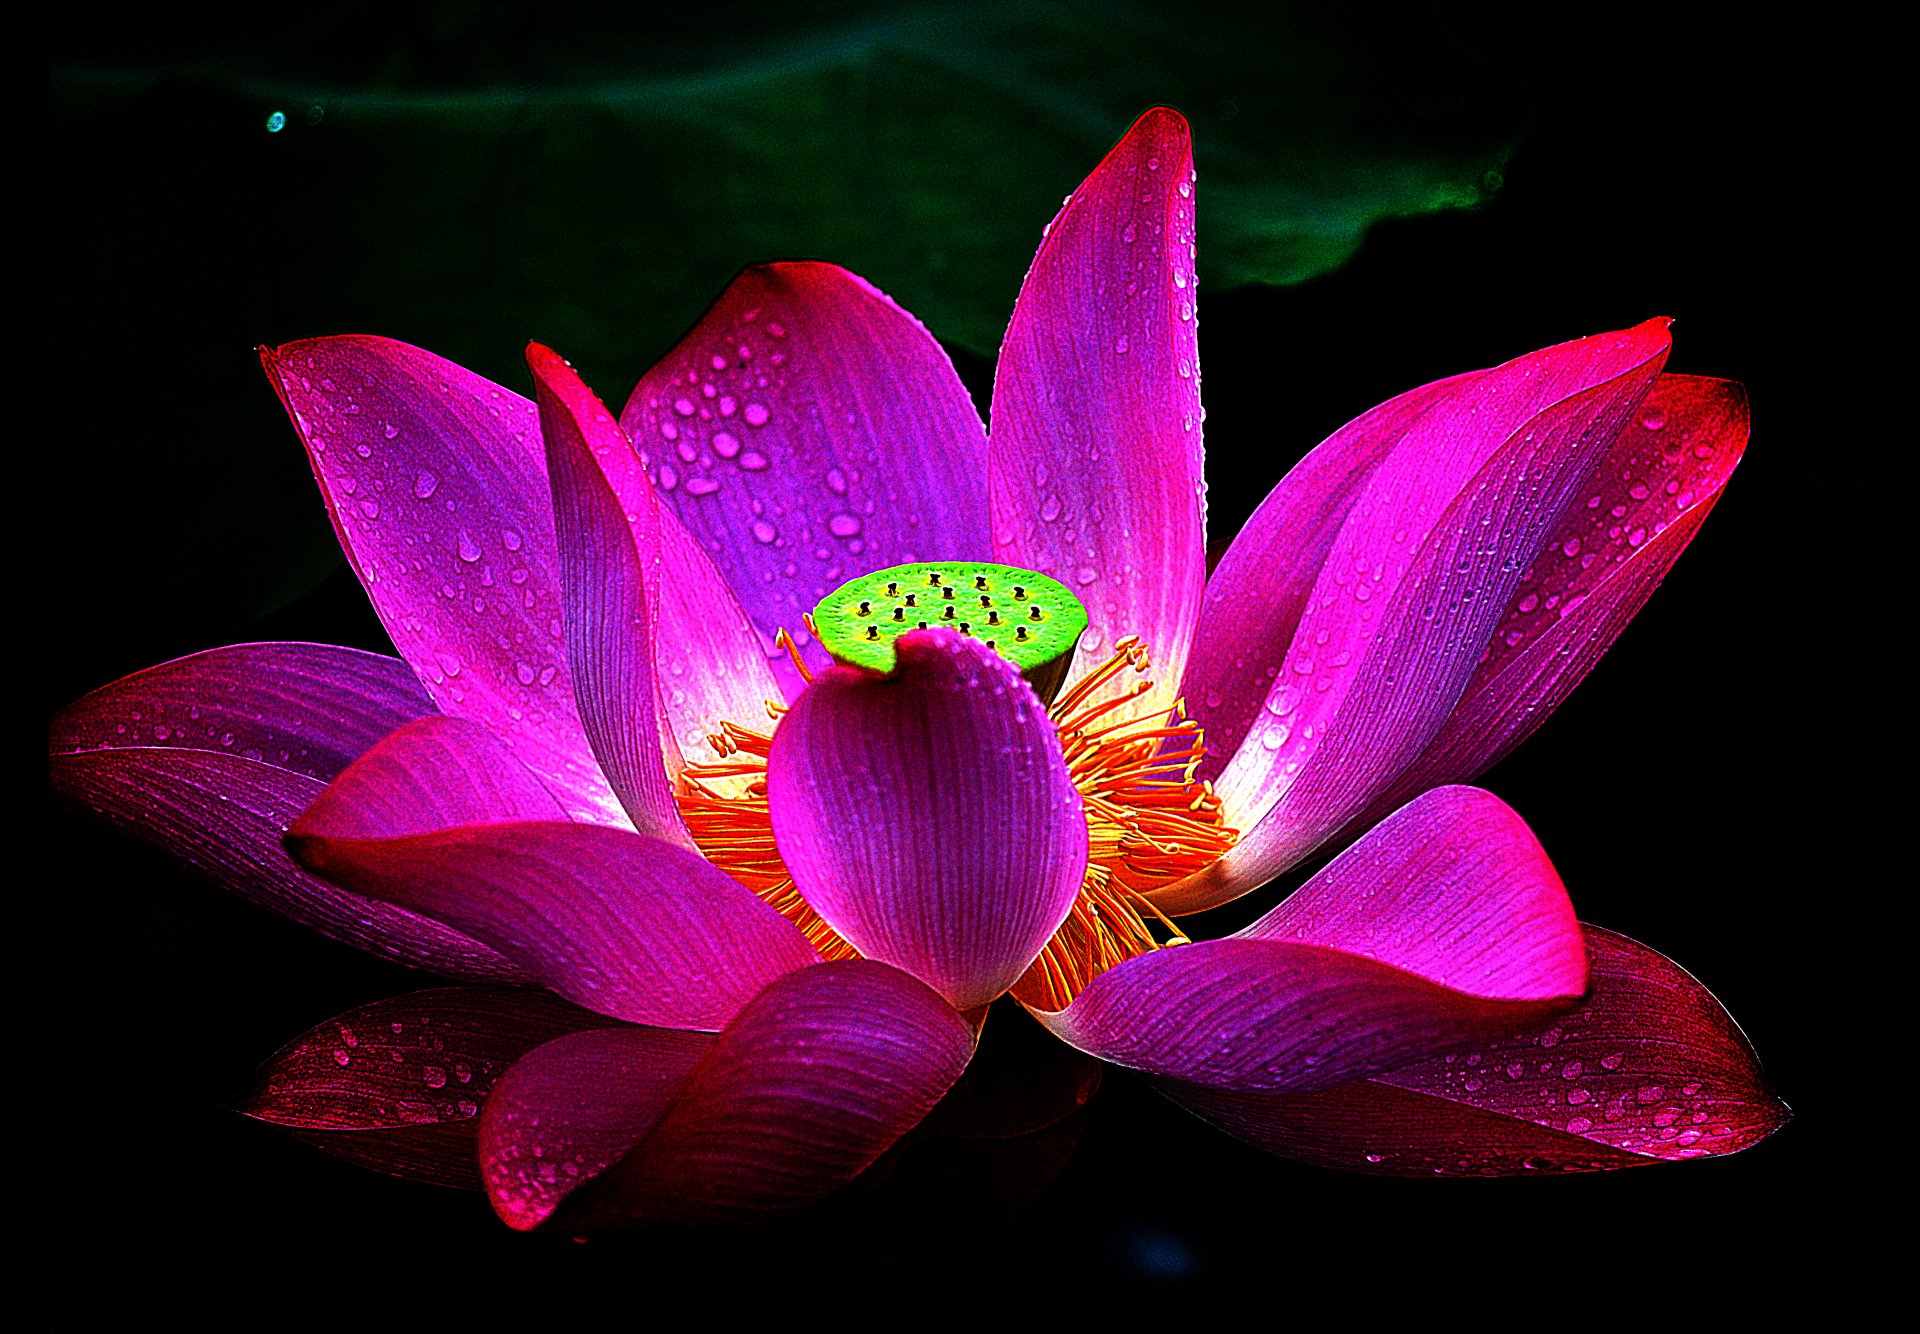 Lotus 4k Ultra HD là bộ sưu tập các hình ảnh hoa sen đẹp nhất được chụp bởi máy ảnh chuyên nghiệp với độ phân giải 4k Ultra HD. Hãy cùng chiêm ngưỡng những bức ảnh tuyệt đẹp của hoa sen, tạo cảm giác như đang ngắm nhìn trực tiếp những bông hoa sen nở rực rỡ trong nắng mai.